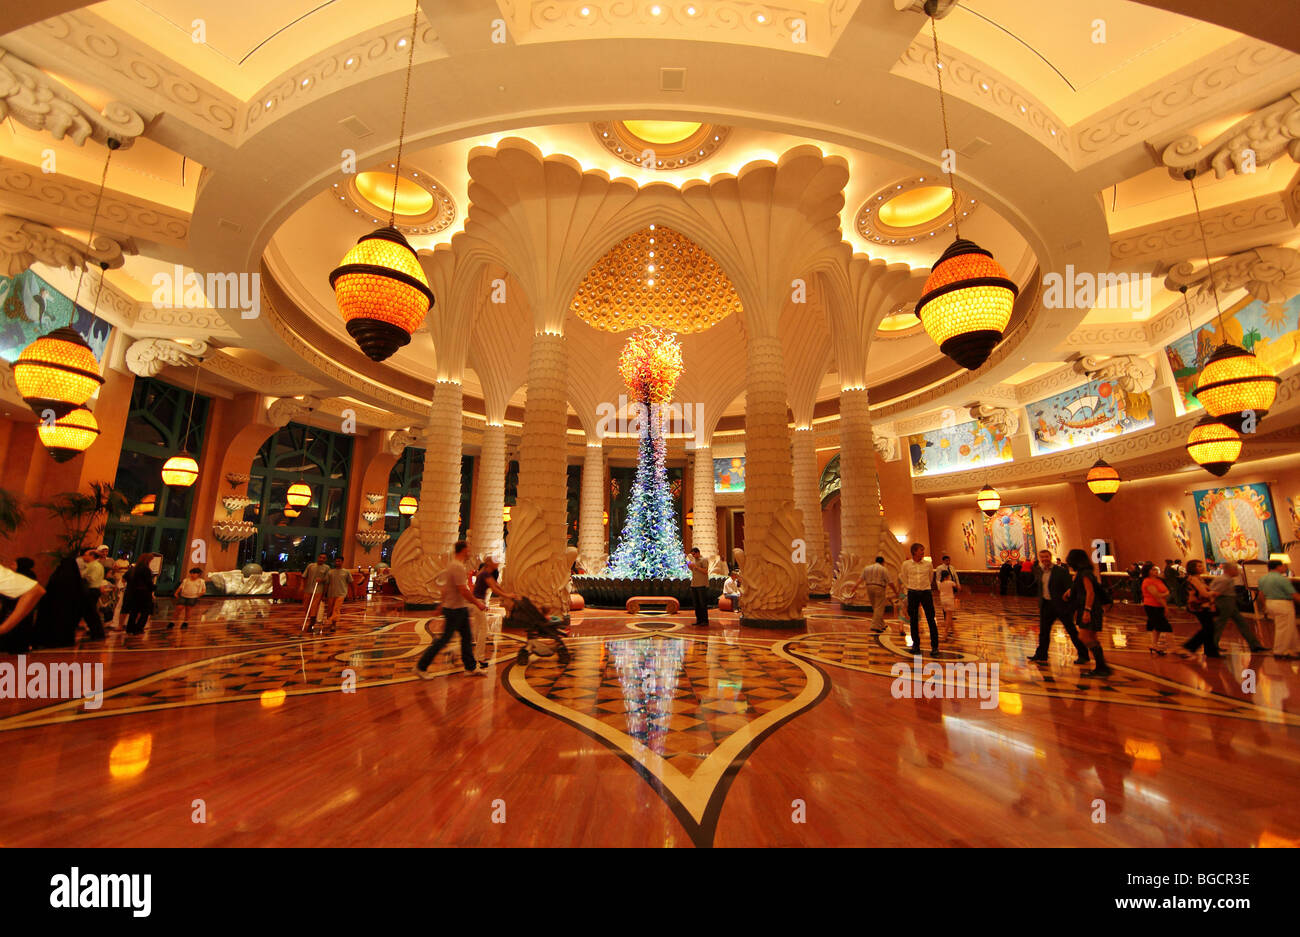 Die Lobby des Hotels Atlantis, Dubai, Vereinigte Arabische Emirate Stockfoto